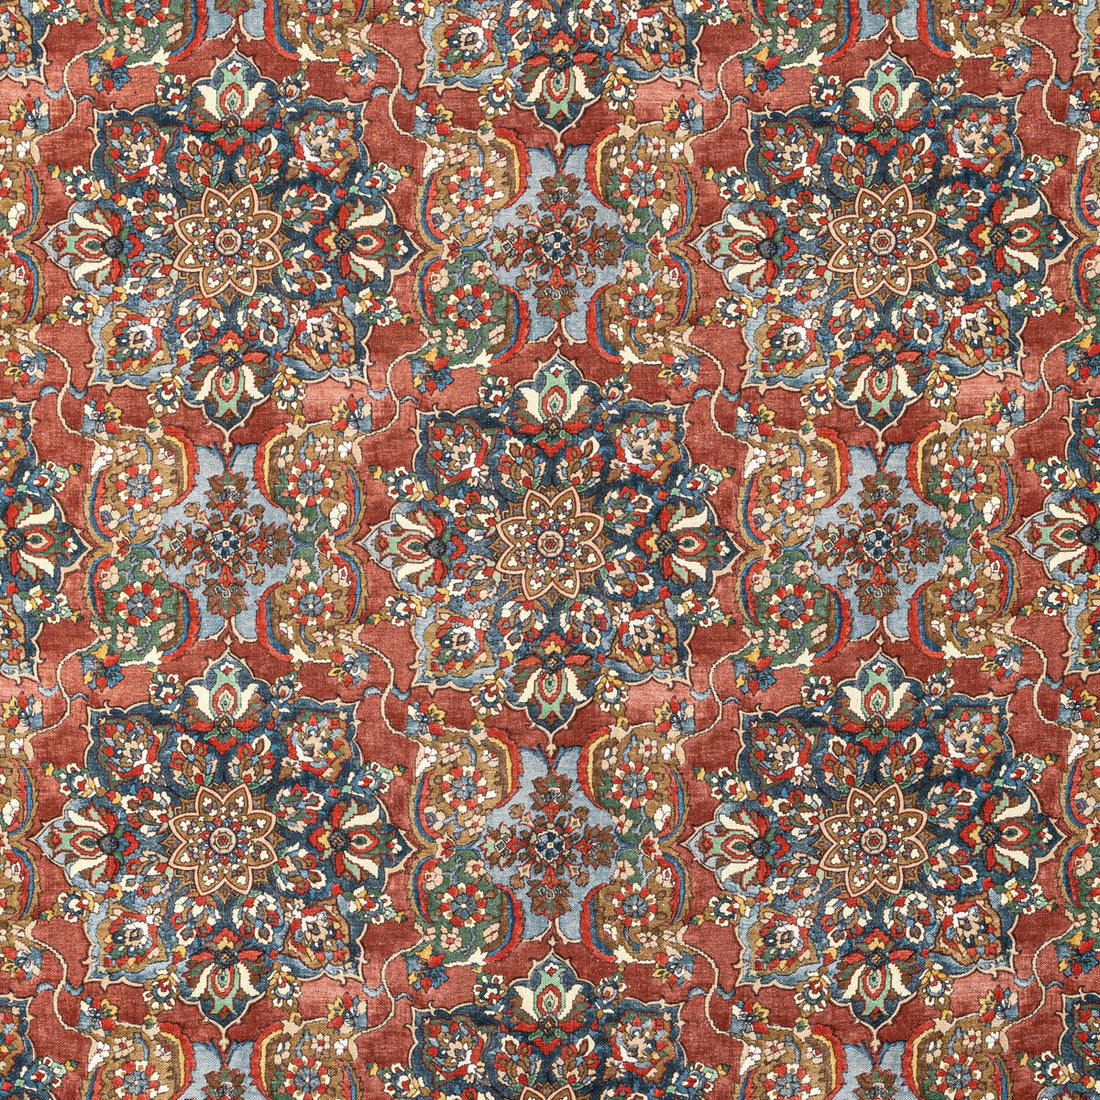 Granada Print fabric in ruby color - pattern 2020220.924.0 - by Lee Jofa in the Oscar De La Renta IV collection